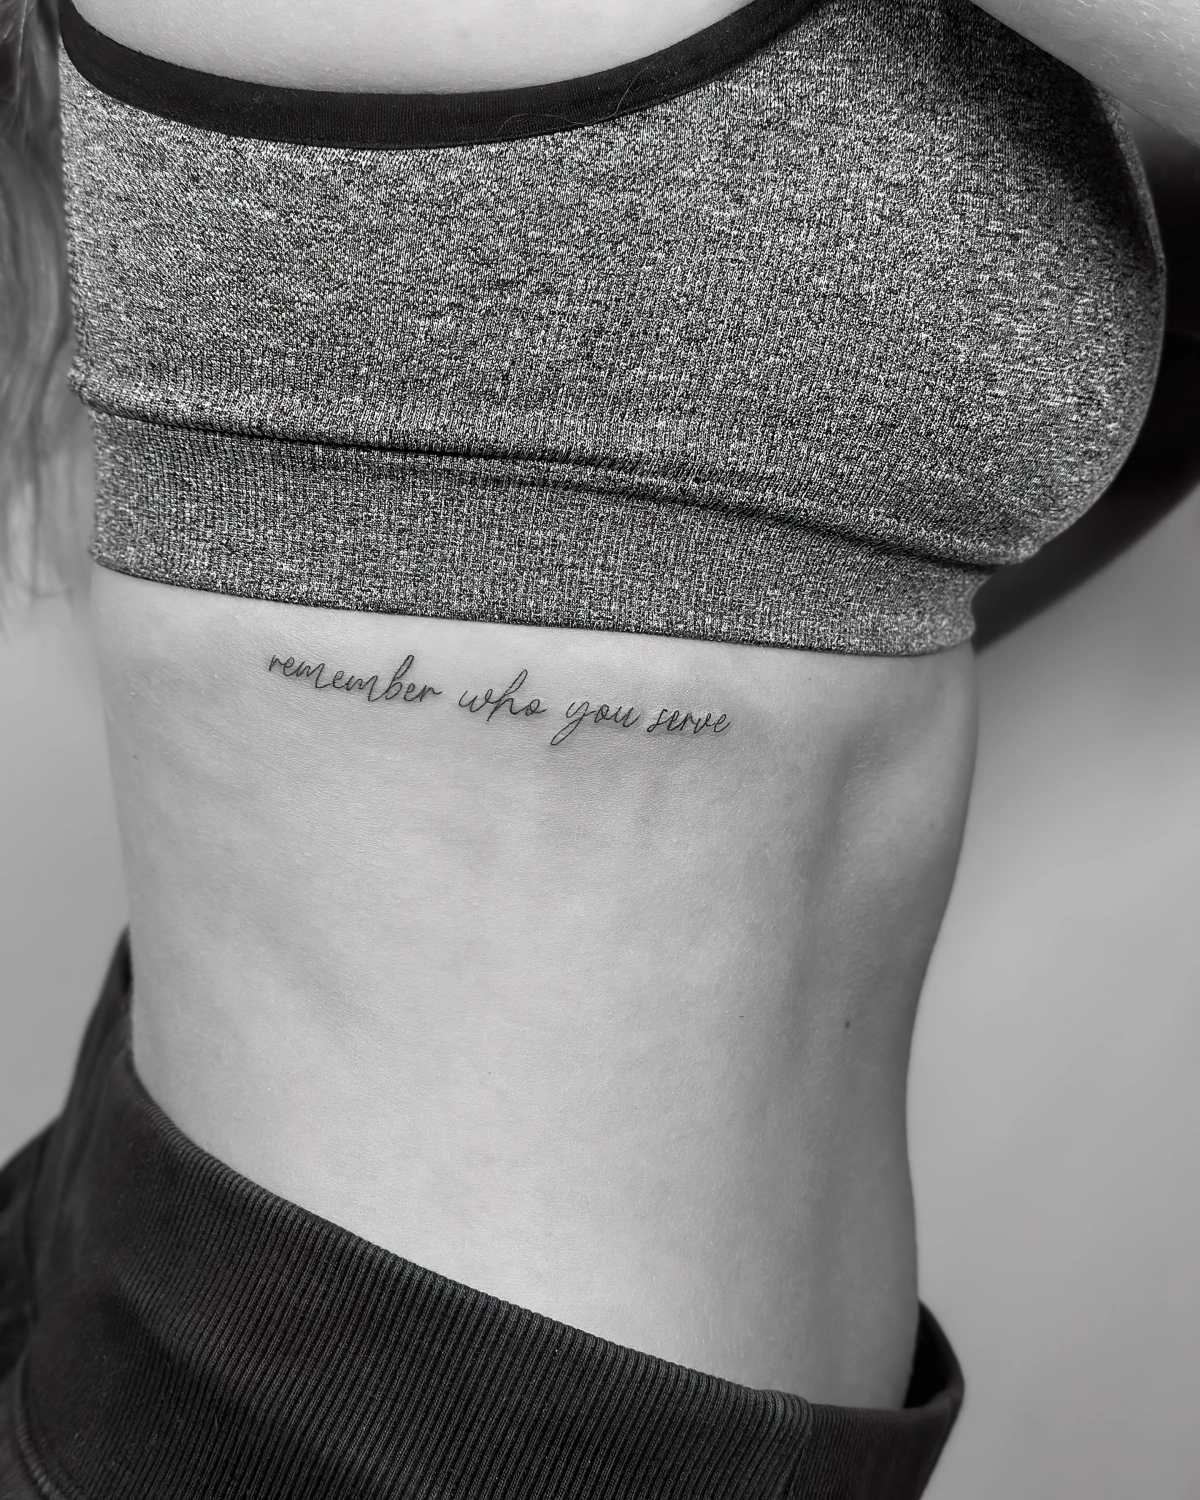 tatouage cote femme photo blanc et noir vetements de sport lettres encre